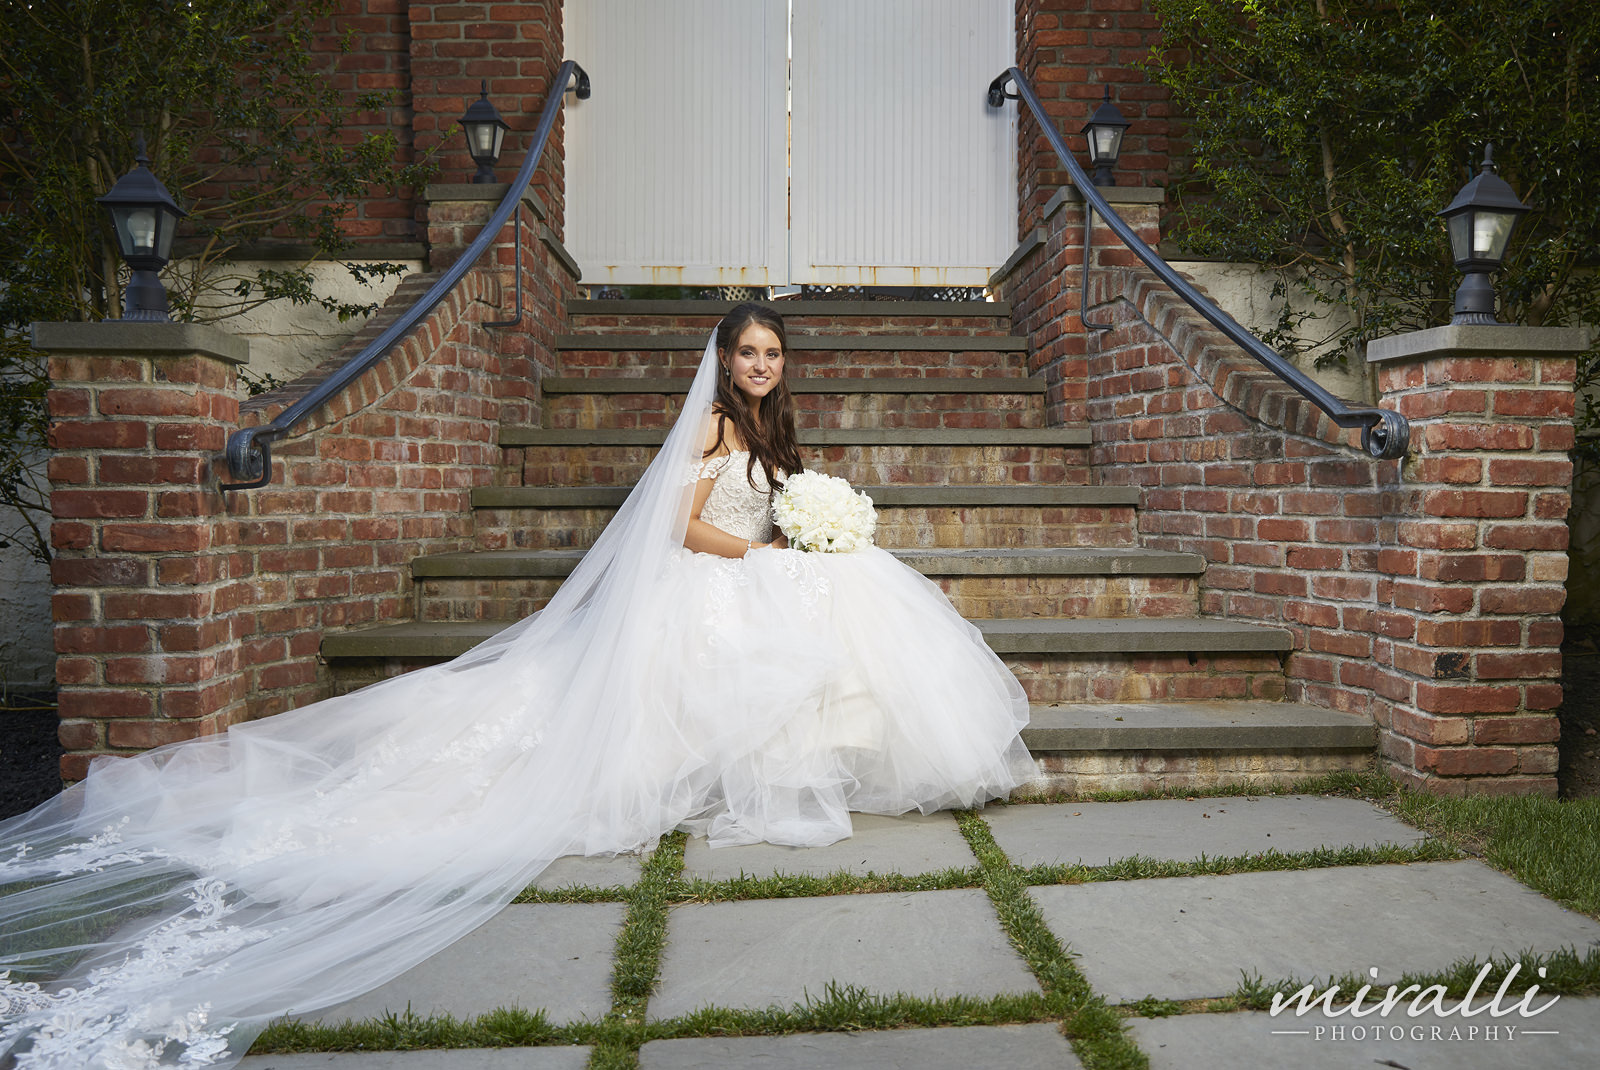 Garden Terrace at Fox Hollow Wedding Photos by Miralli Photography